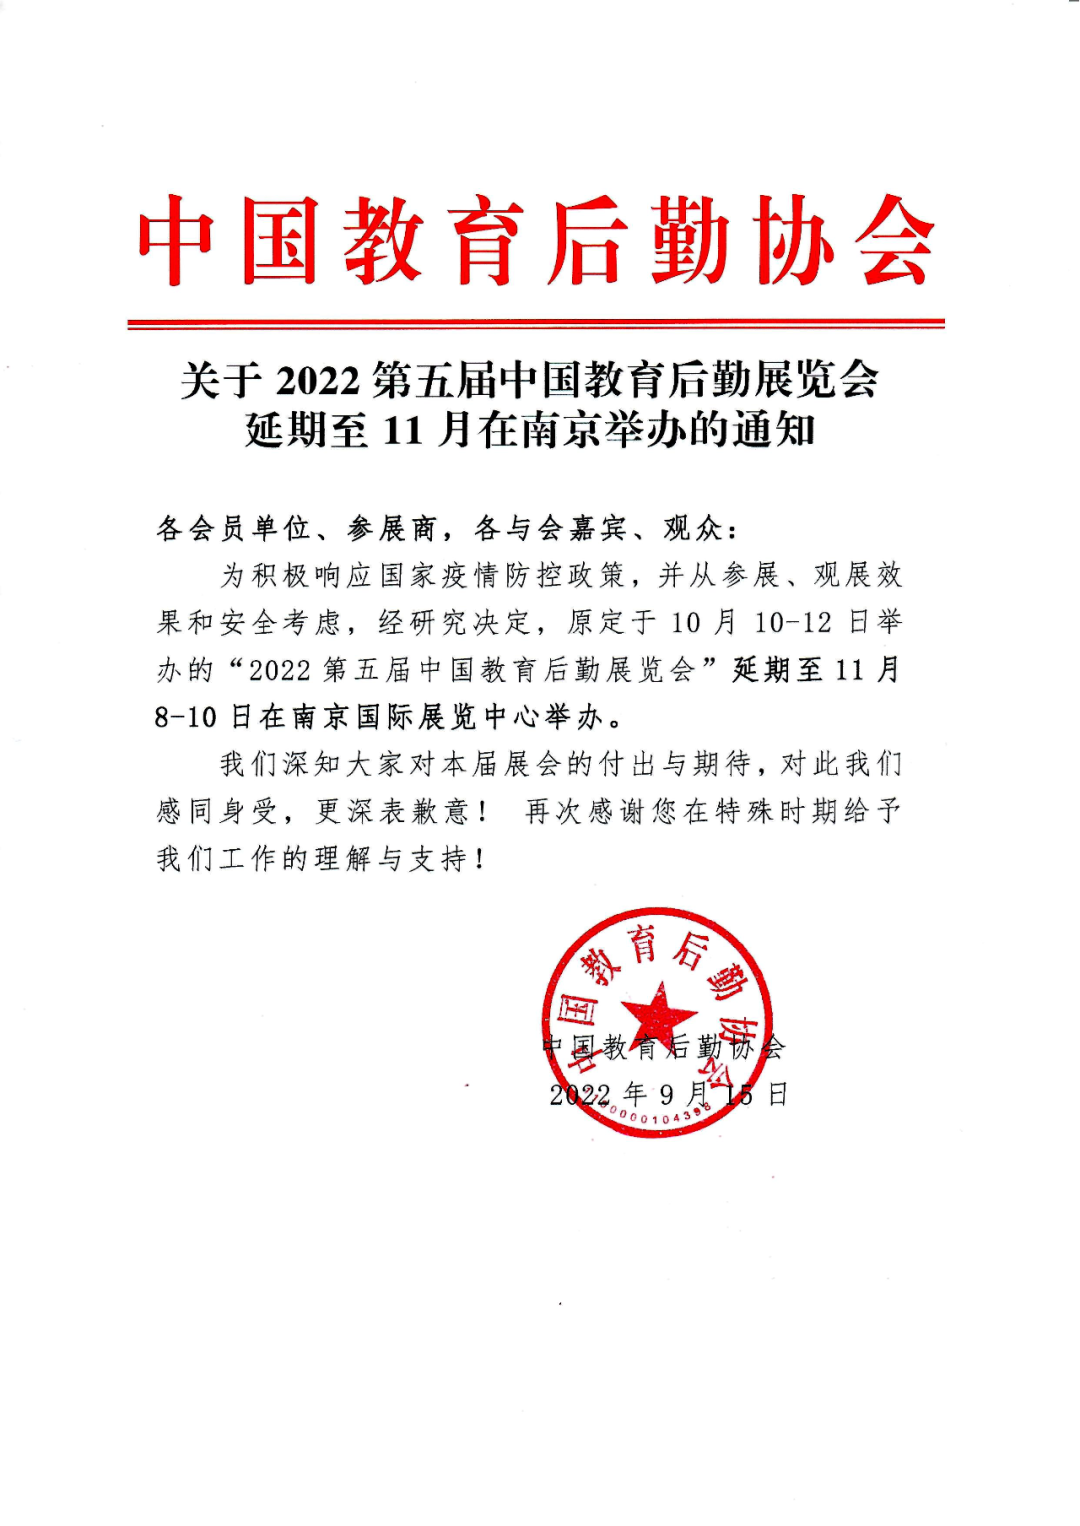 关于“第五届 CCLE教育后勤展延期至11月在南京举办”的通知